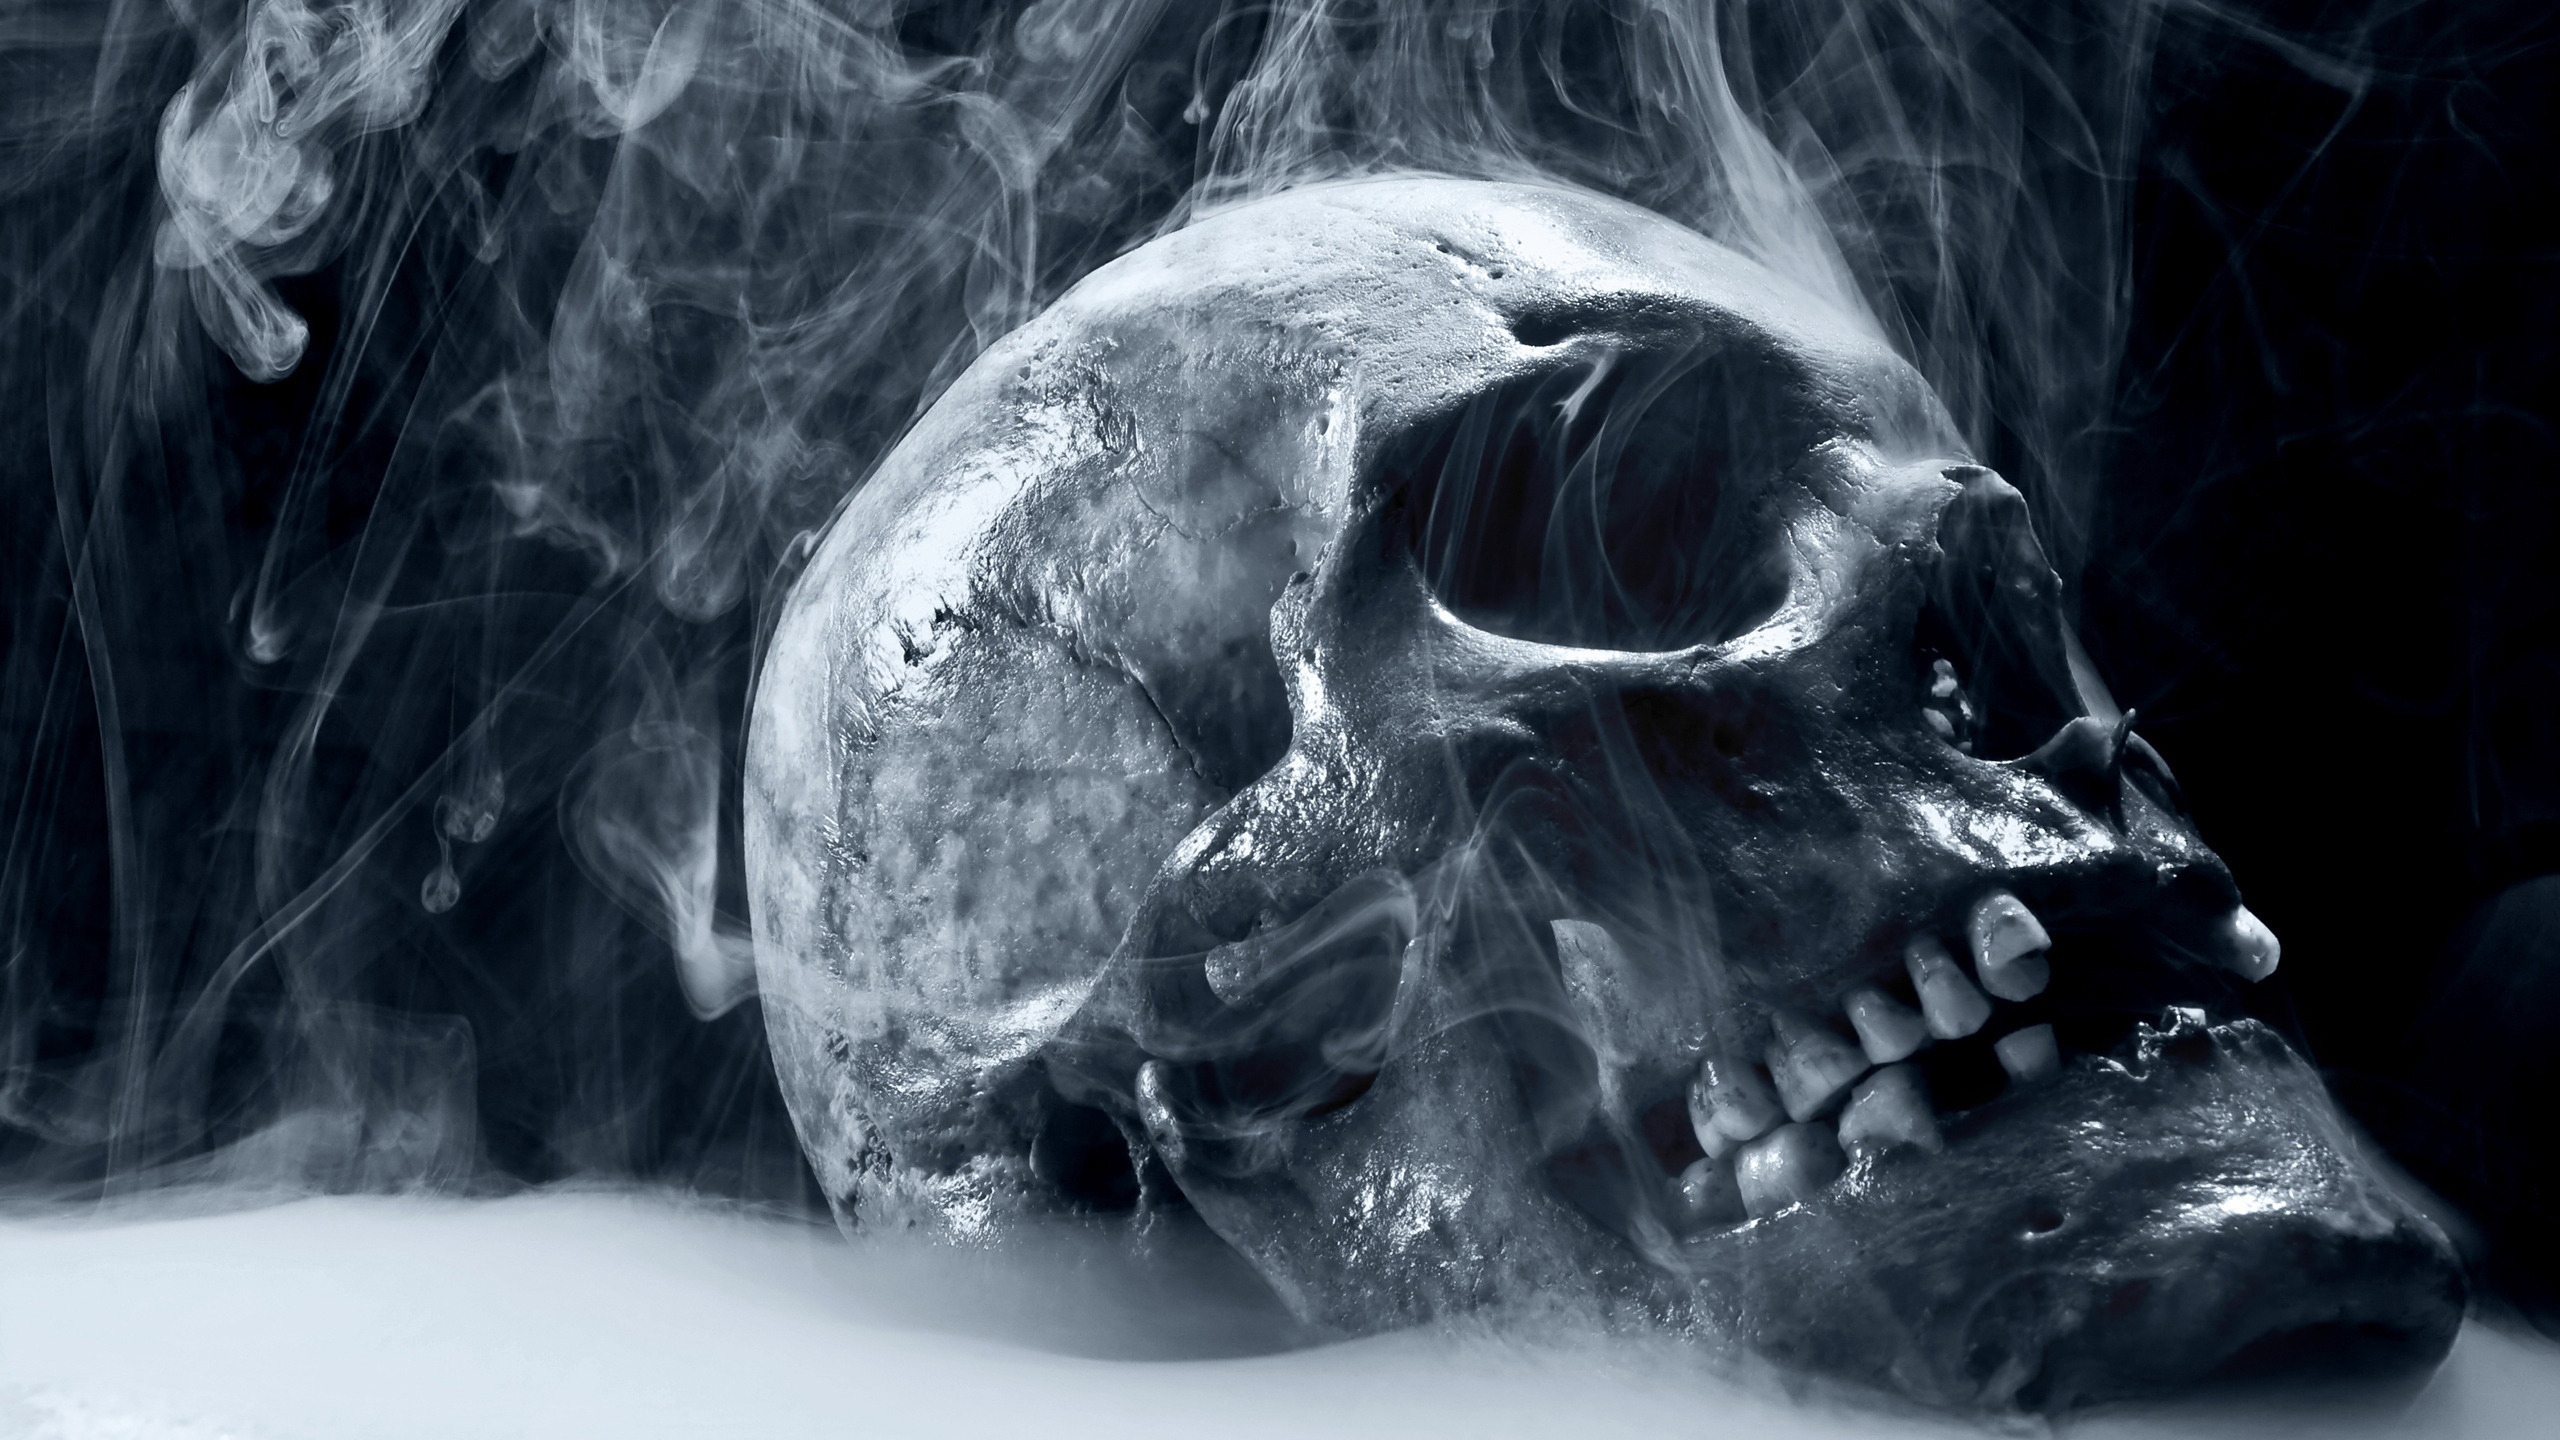 Skull Smoking for 2560x1440 HDTV resolution